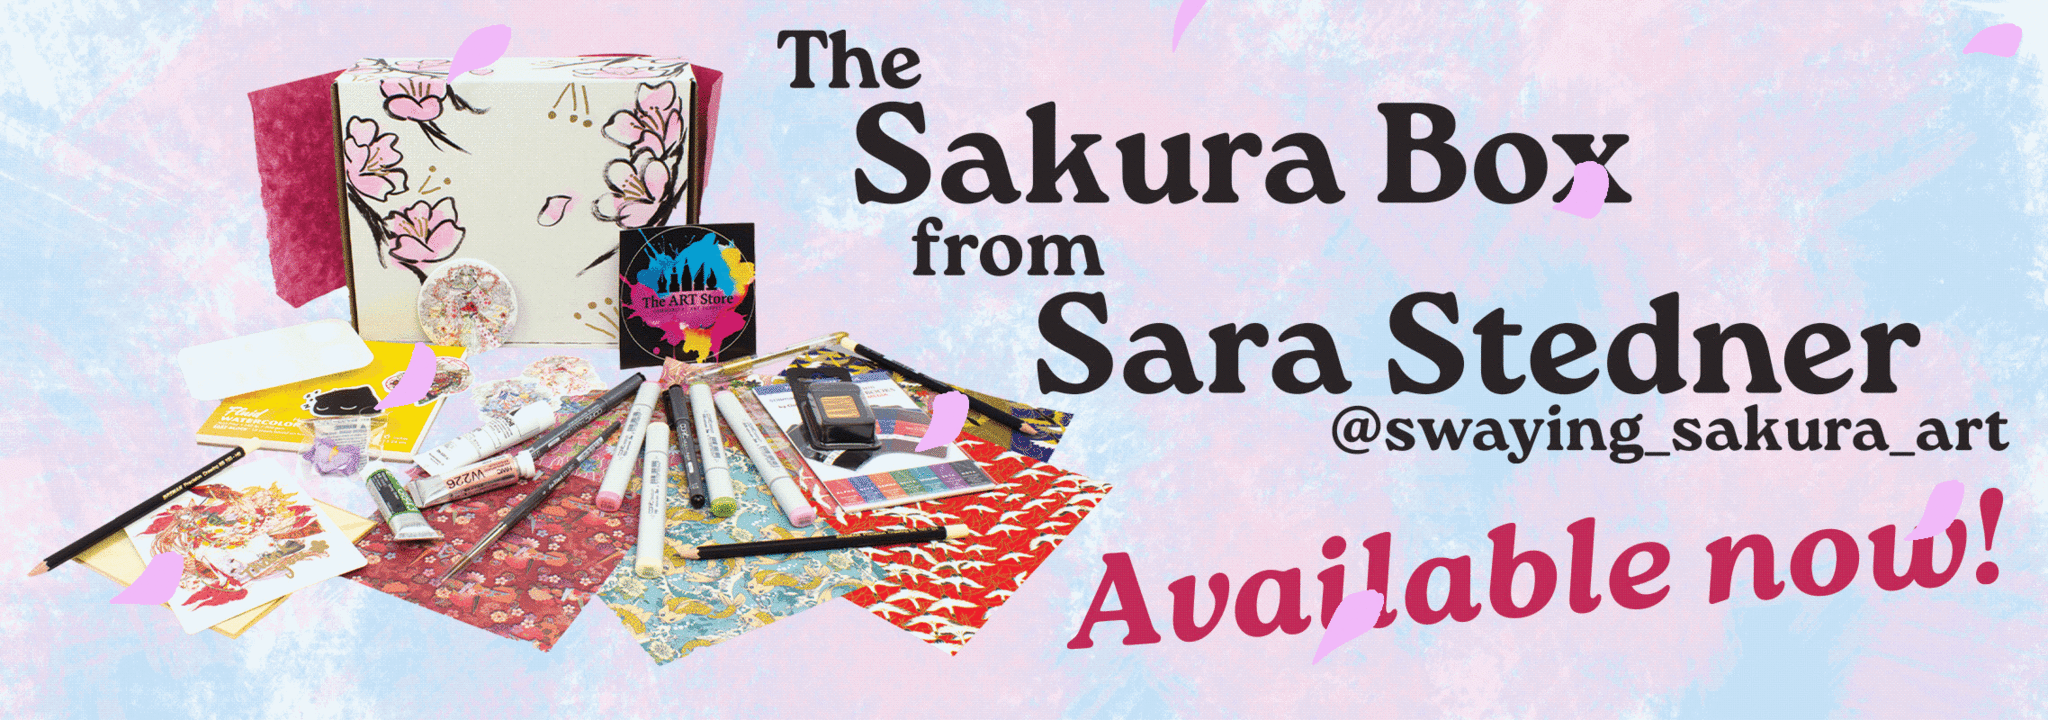 Sara's Artist Box